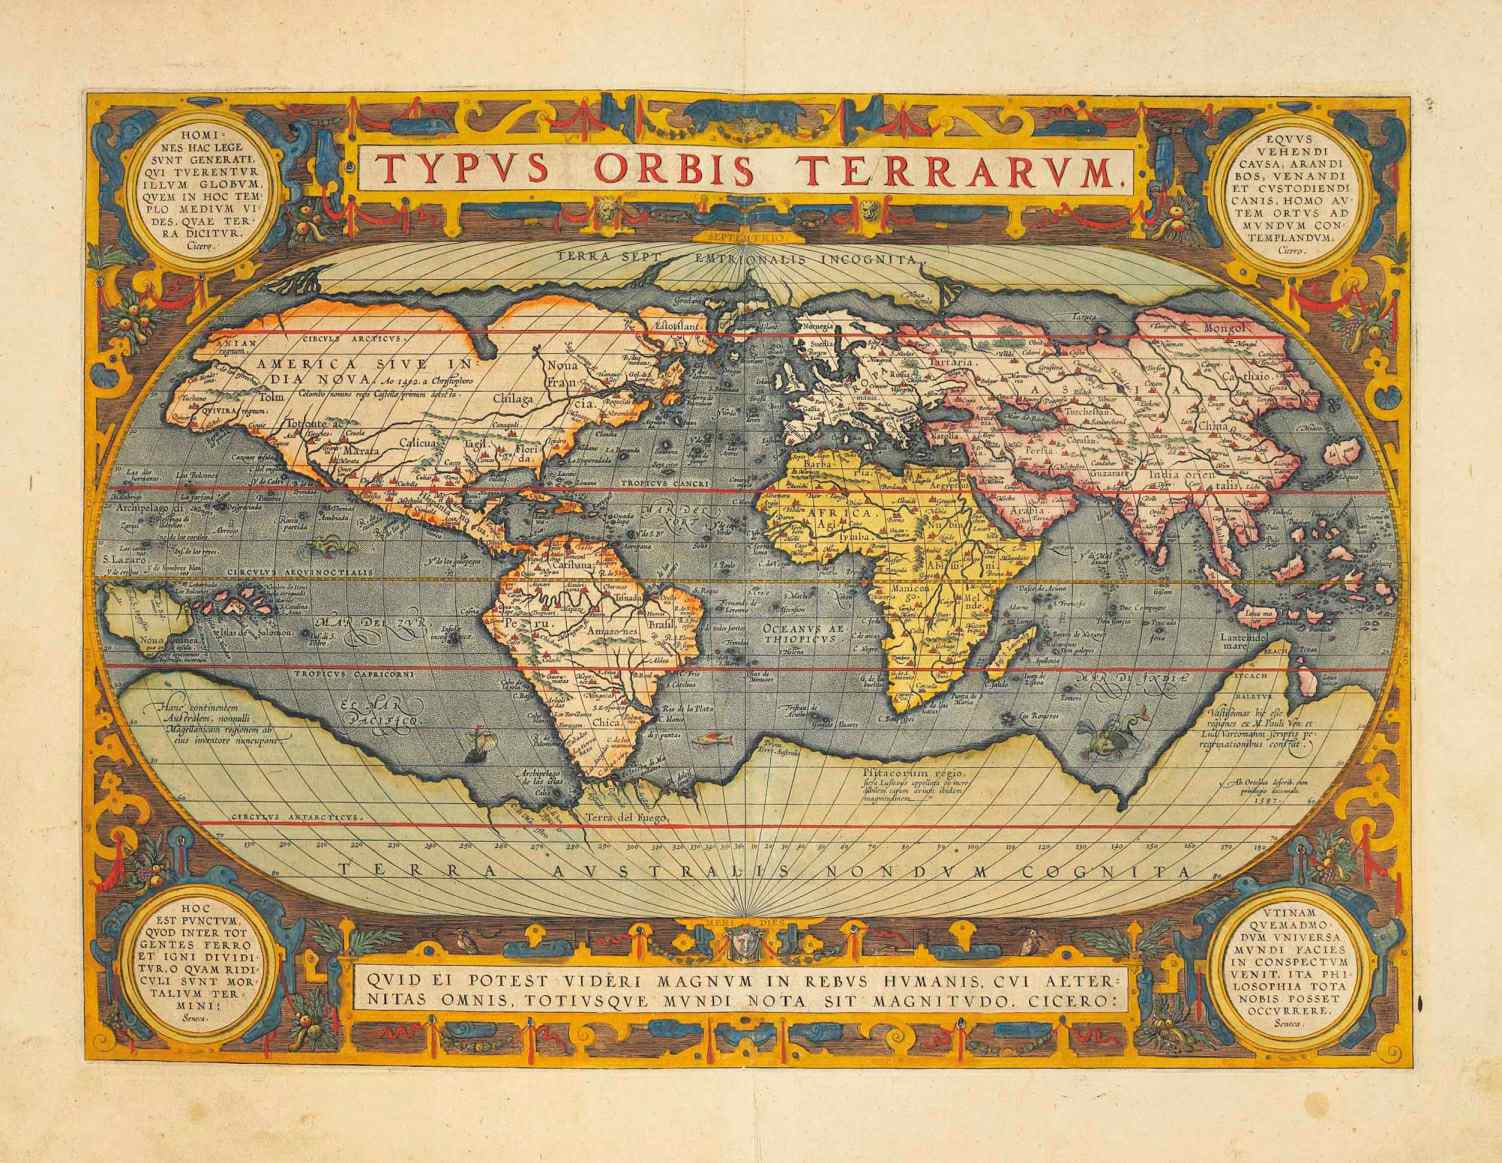 Sur cette carte de 1570, Hyperborée est représentée comme un continent arctique et décrite comme "Terra Septemtriionalis Incognita" (Terre nordique inconnue).